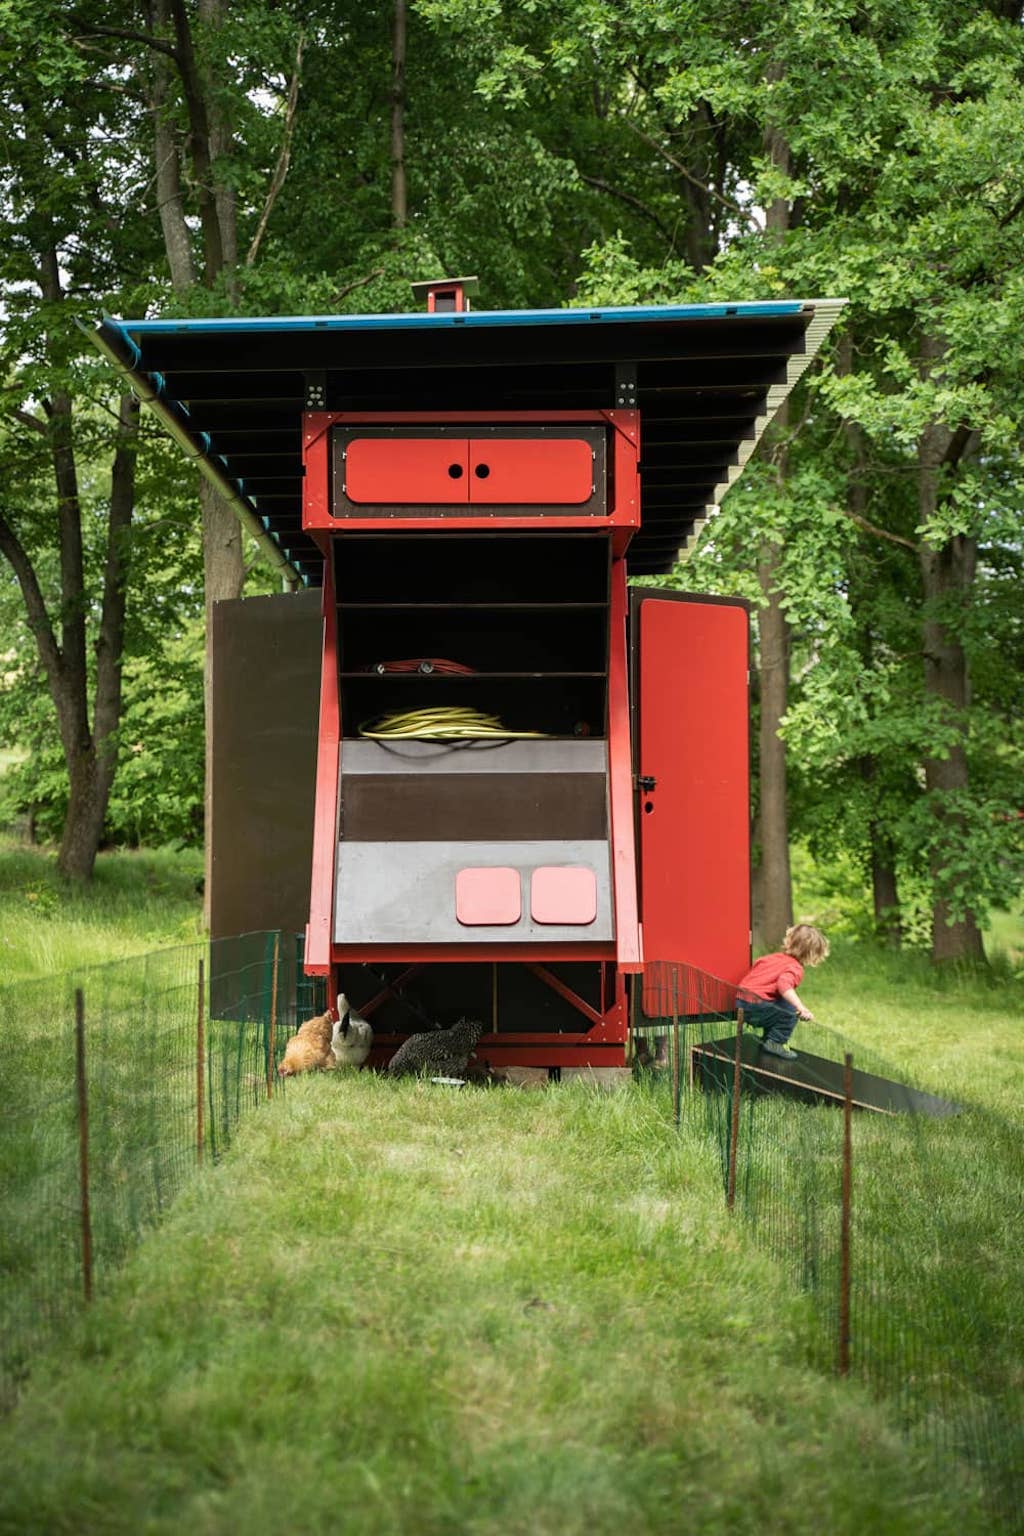 Gardenrobe, la peculiar cabaña que incluye desde energía solar hasta un gallinero